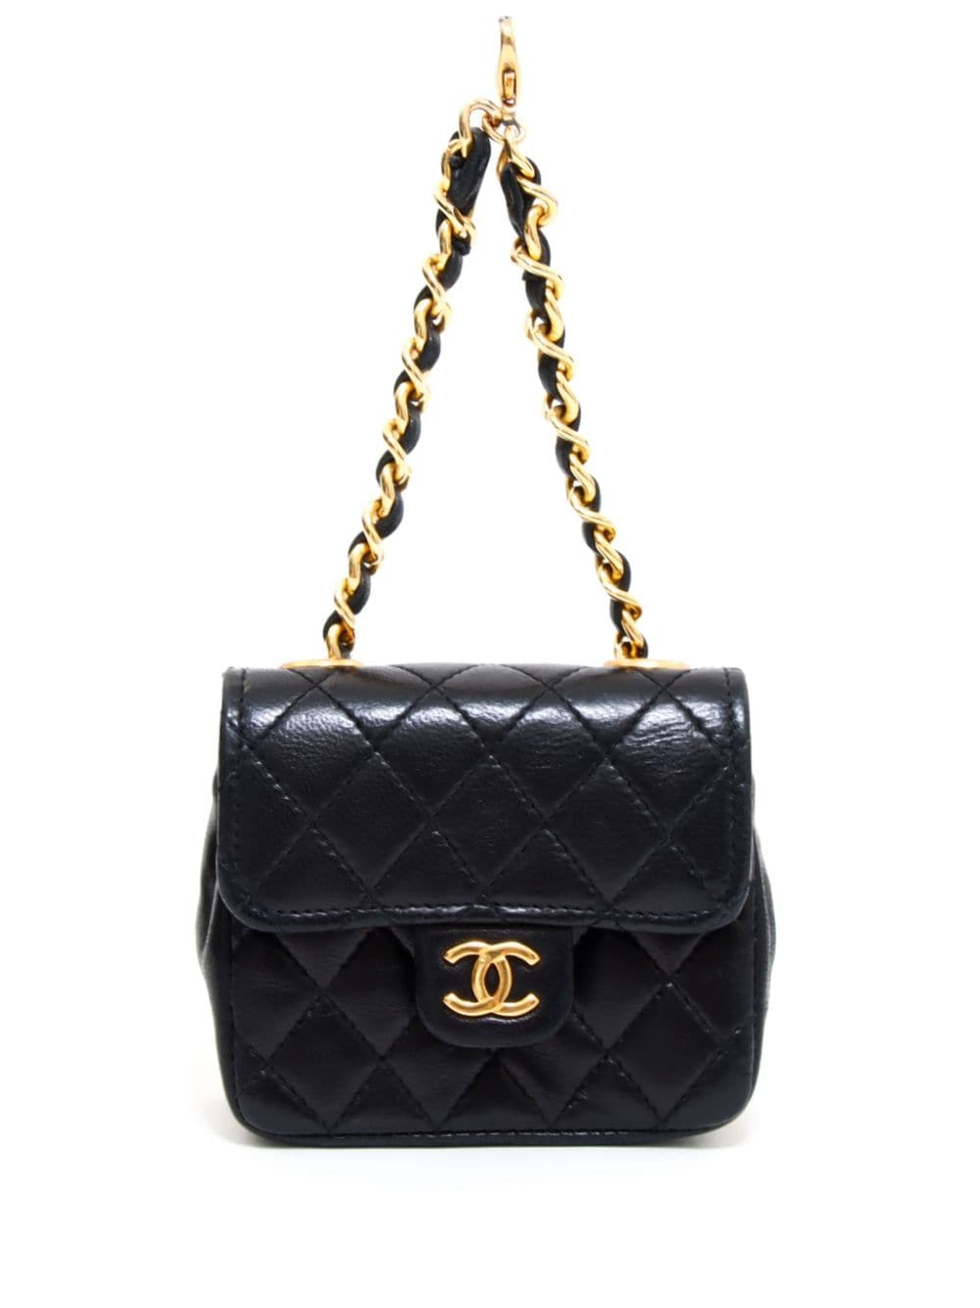 CHANEL, Bags, Vintage Chanel Paris Limited Double Shoulder Bag